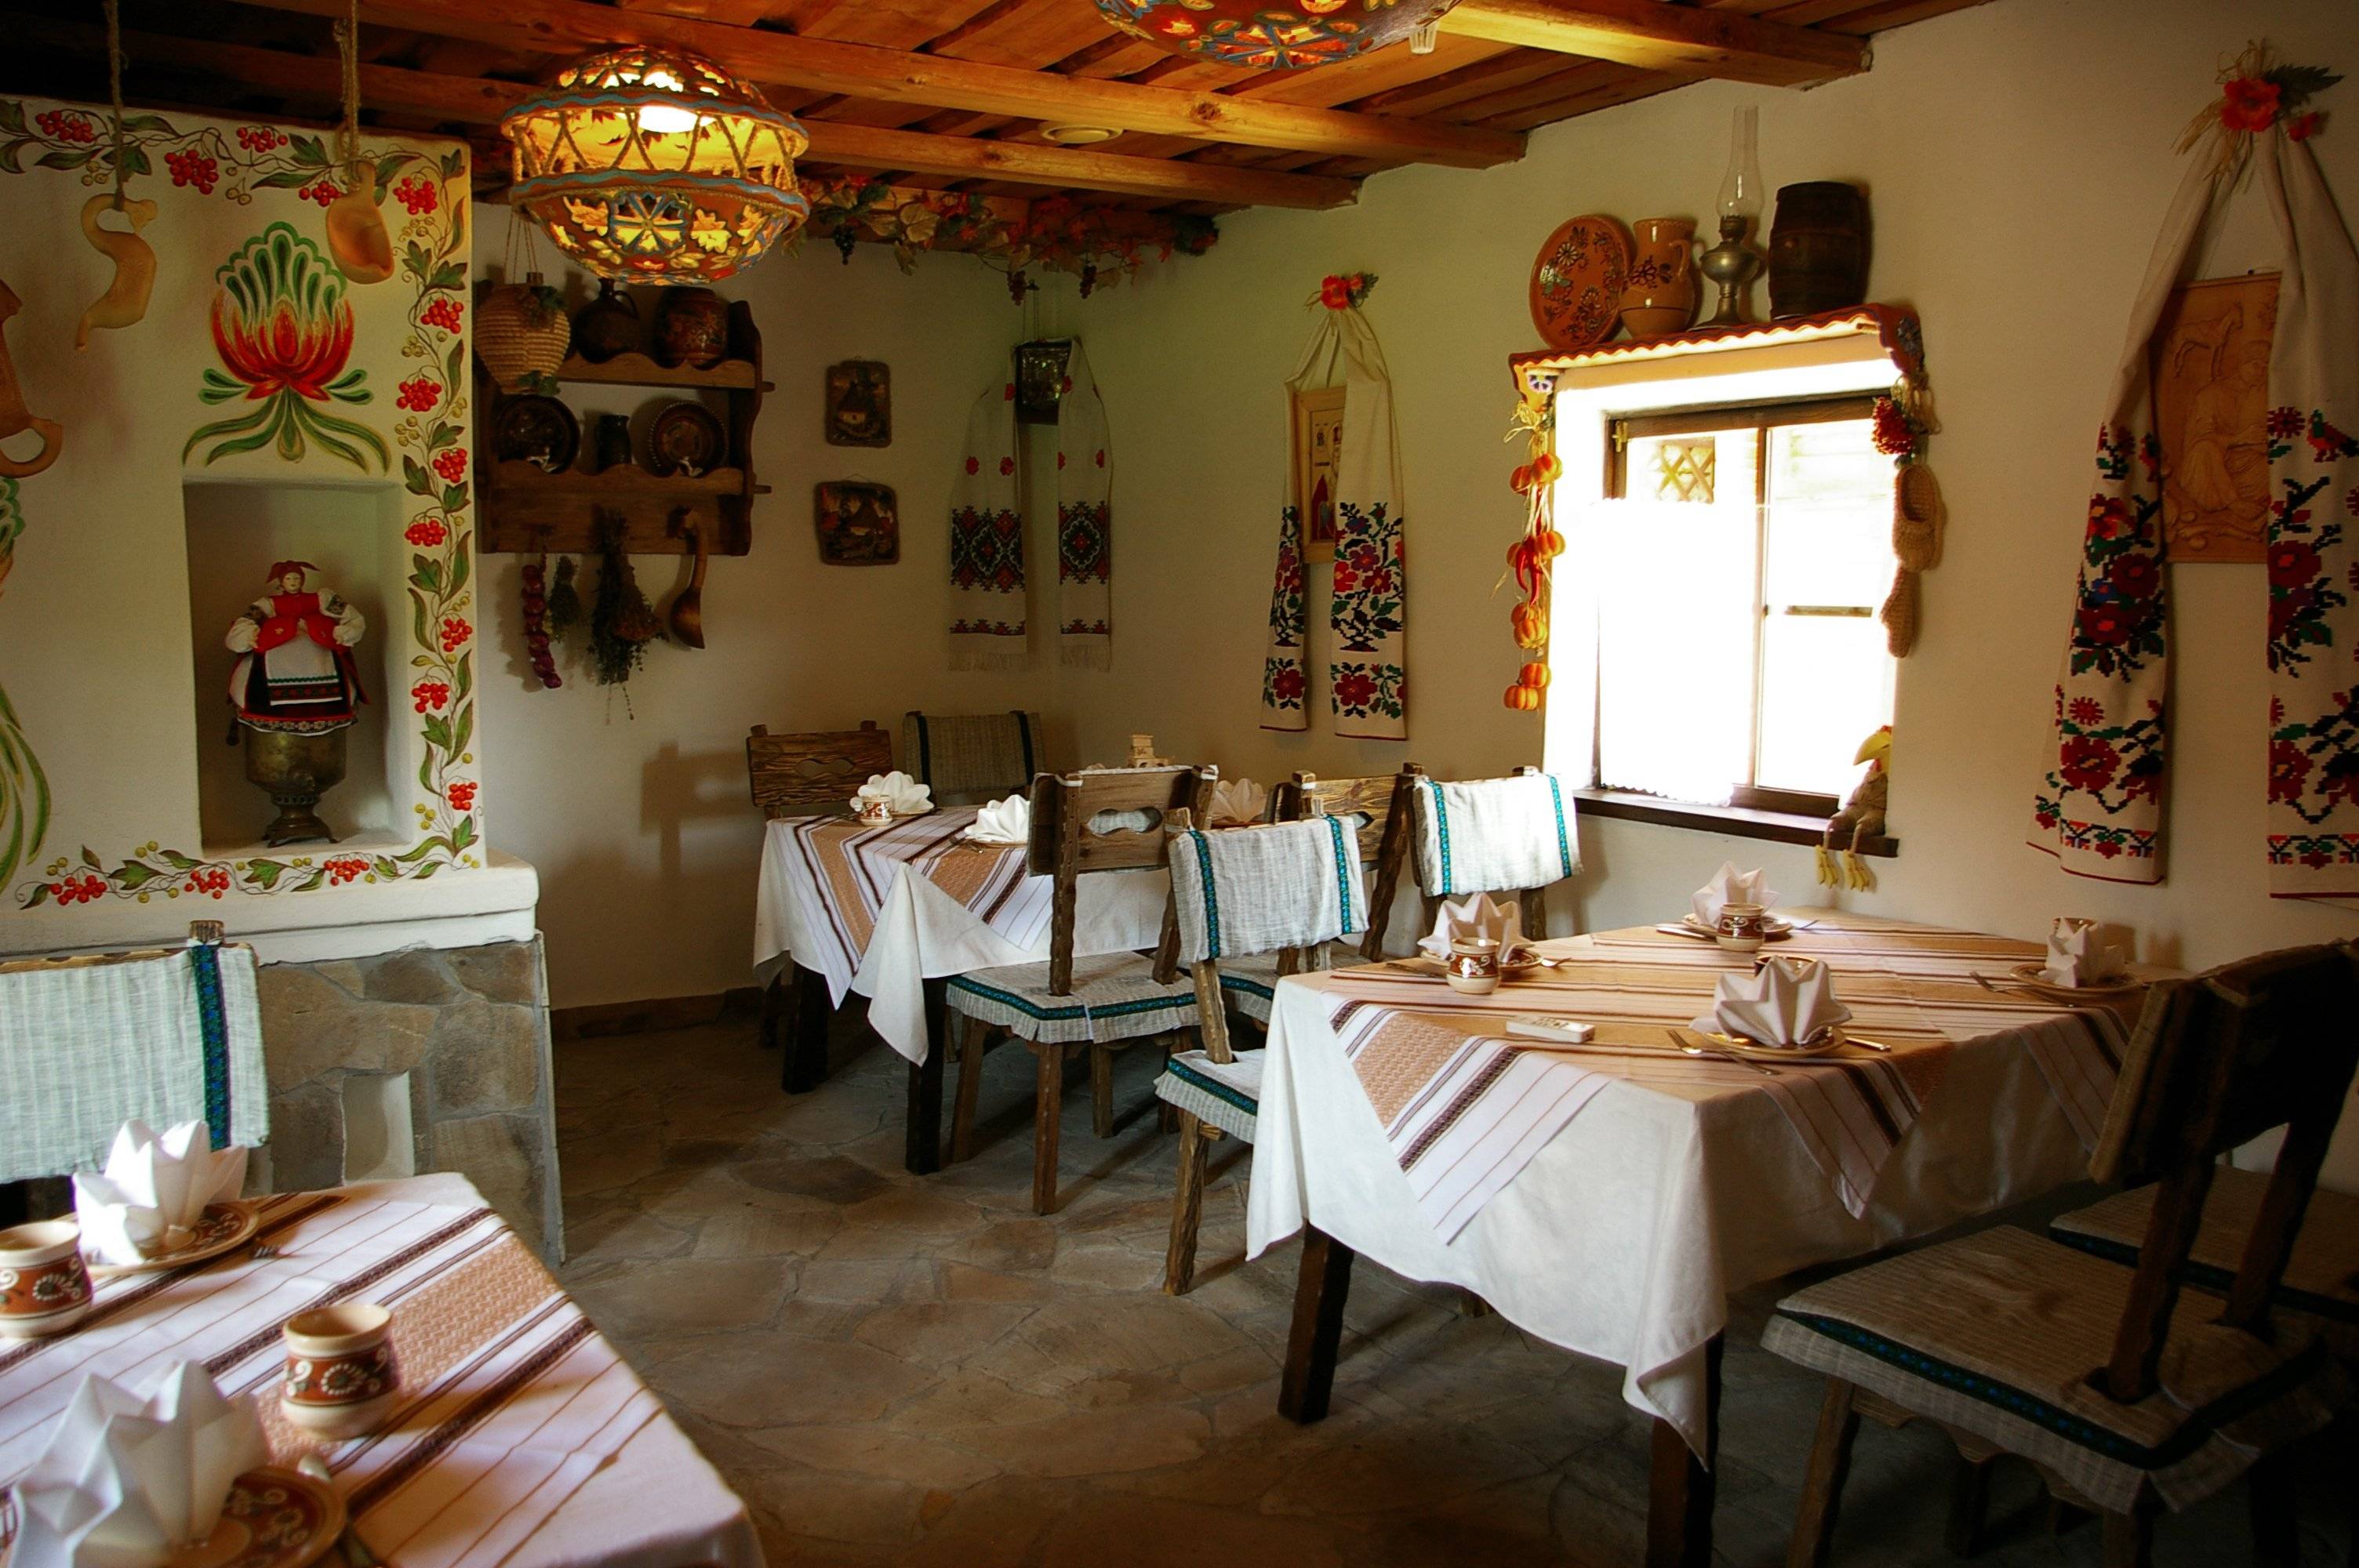 Кухня в украинском стиле своими руками: фото дизайнов интерьера